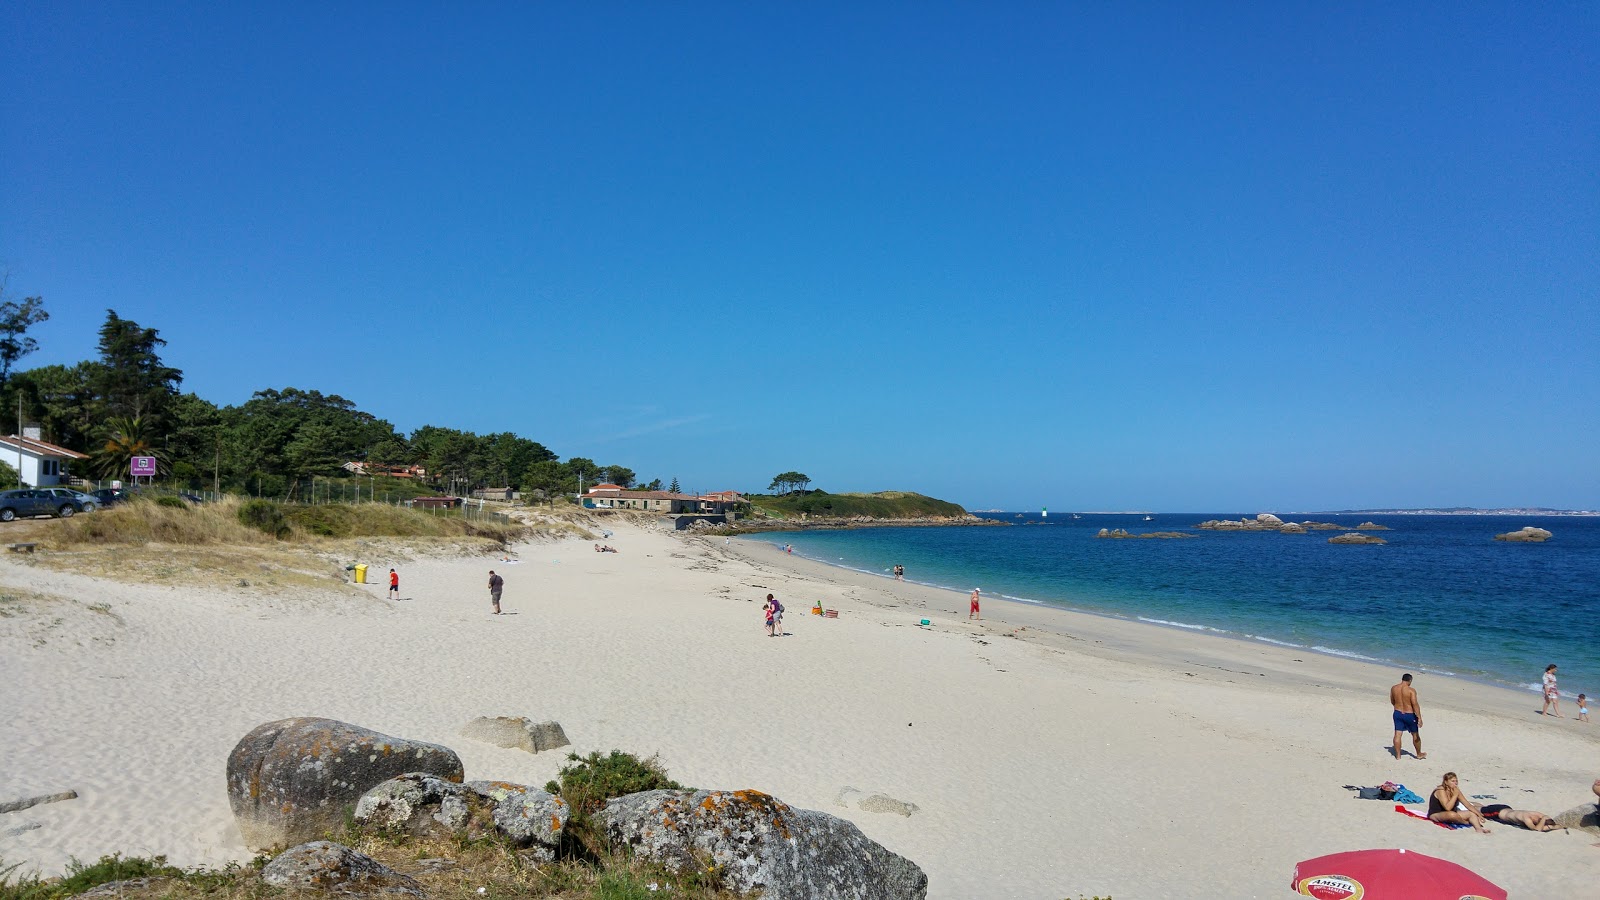 Carreiro beach'in fotoğrafı beyaz kum yüzey ile